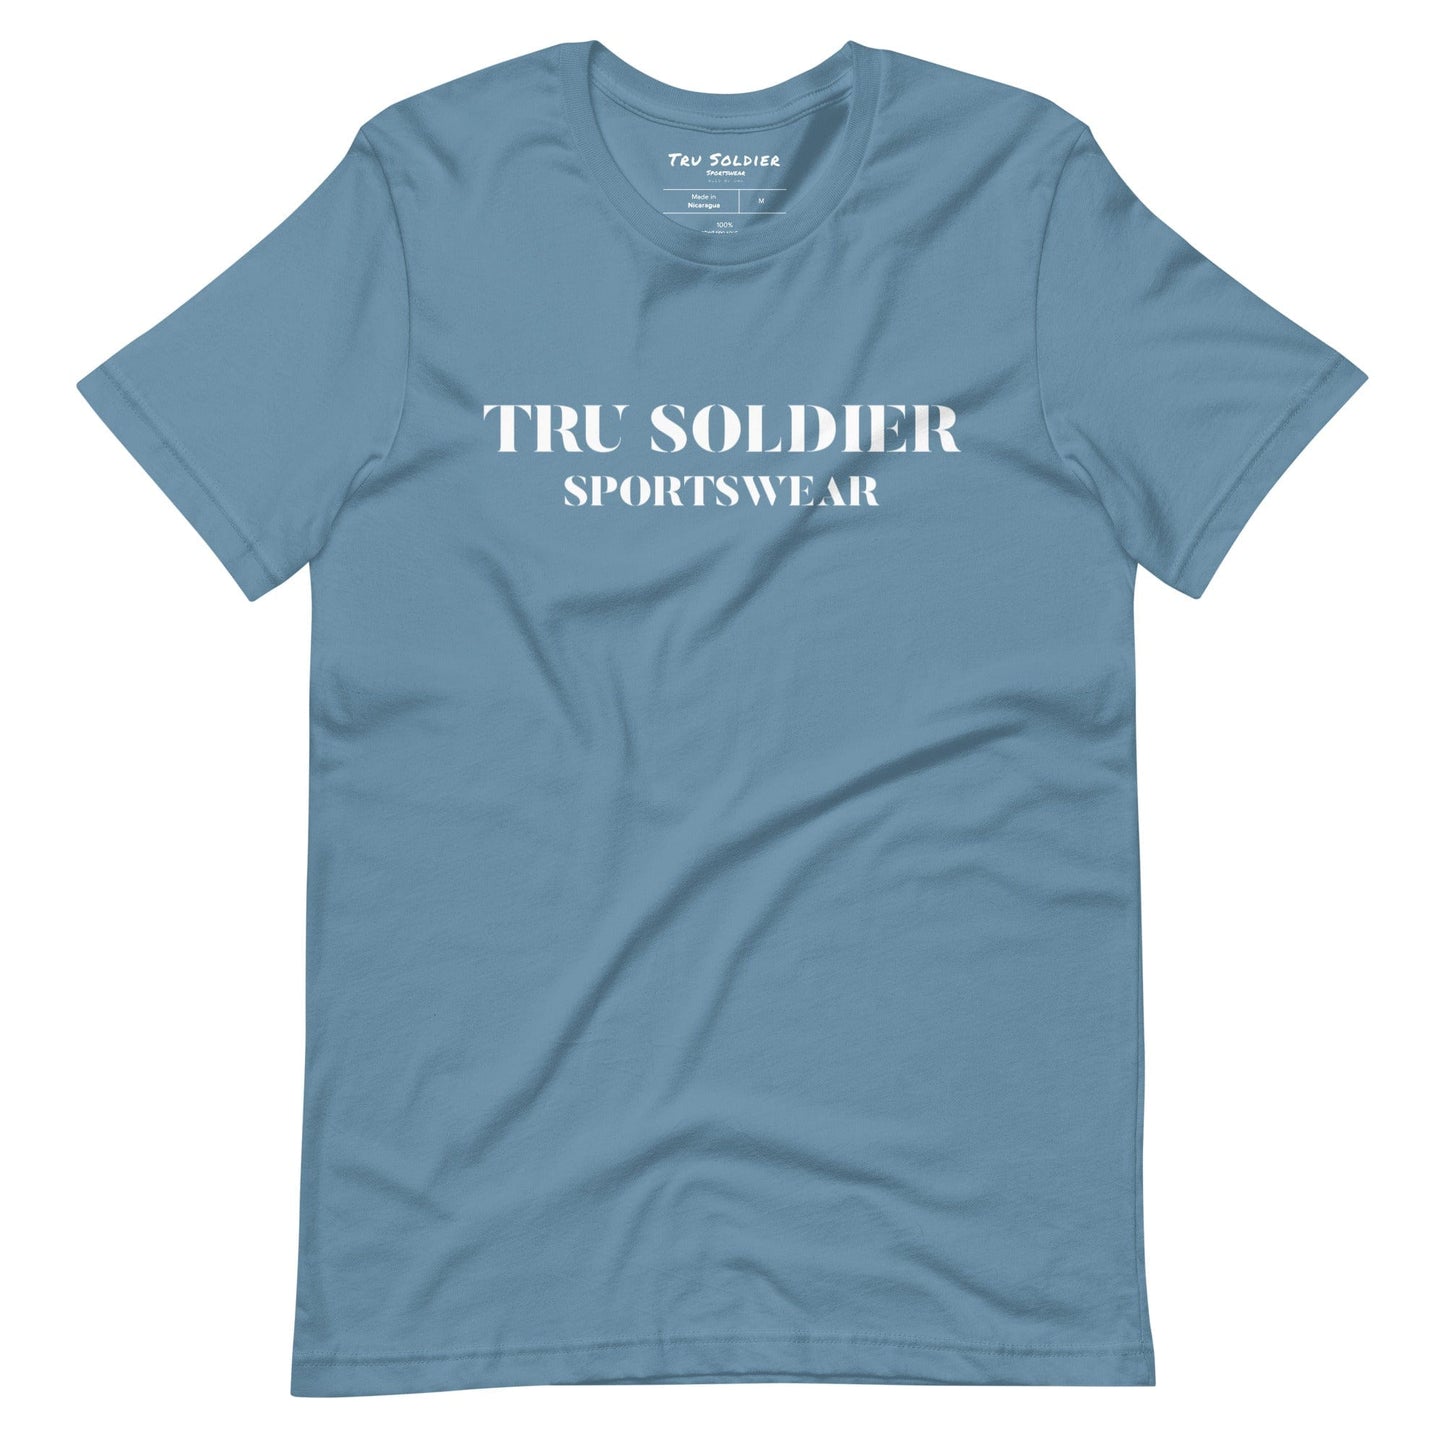 Tru Soldier Sportswear  Steel Blue / S Tru Soldier Sportswear t-shirt